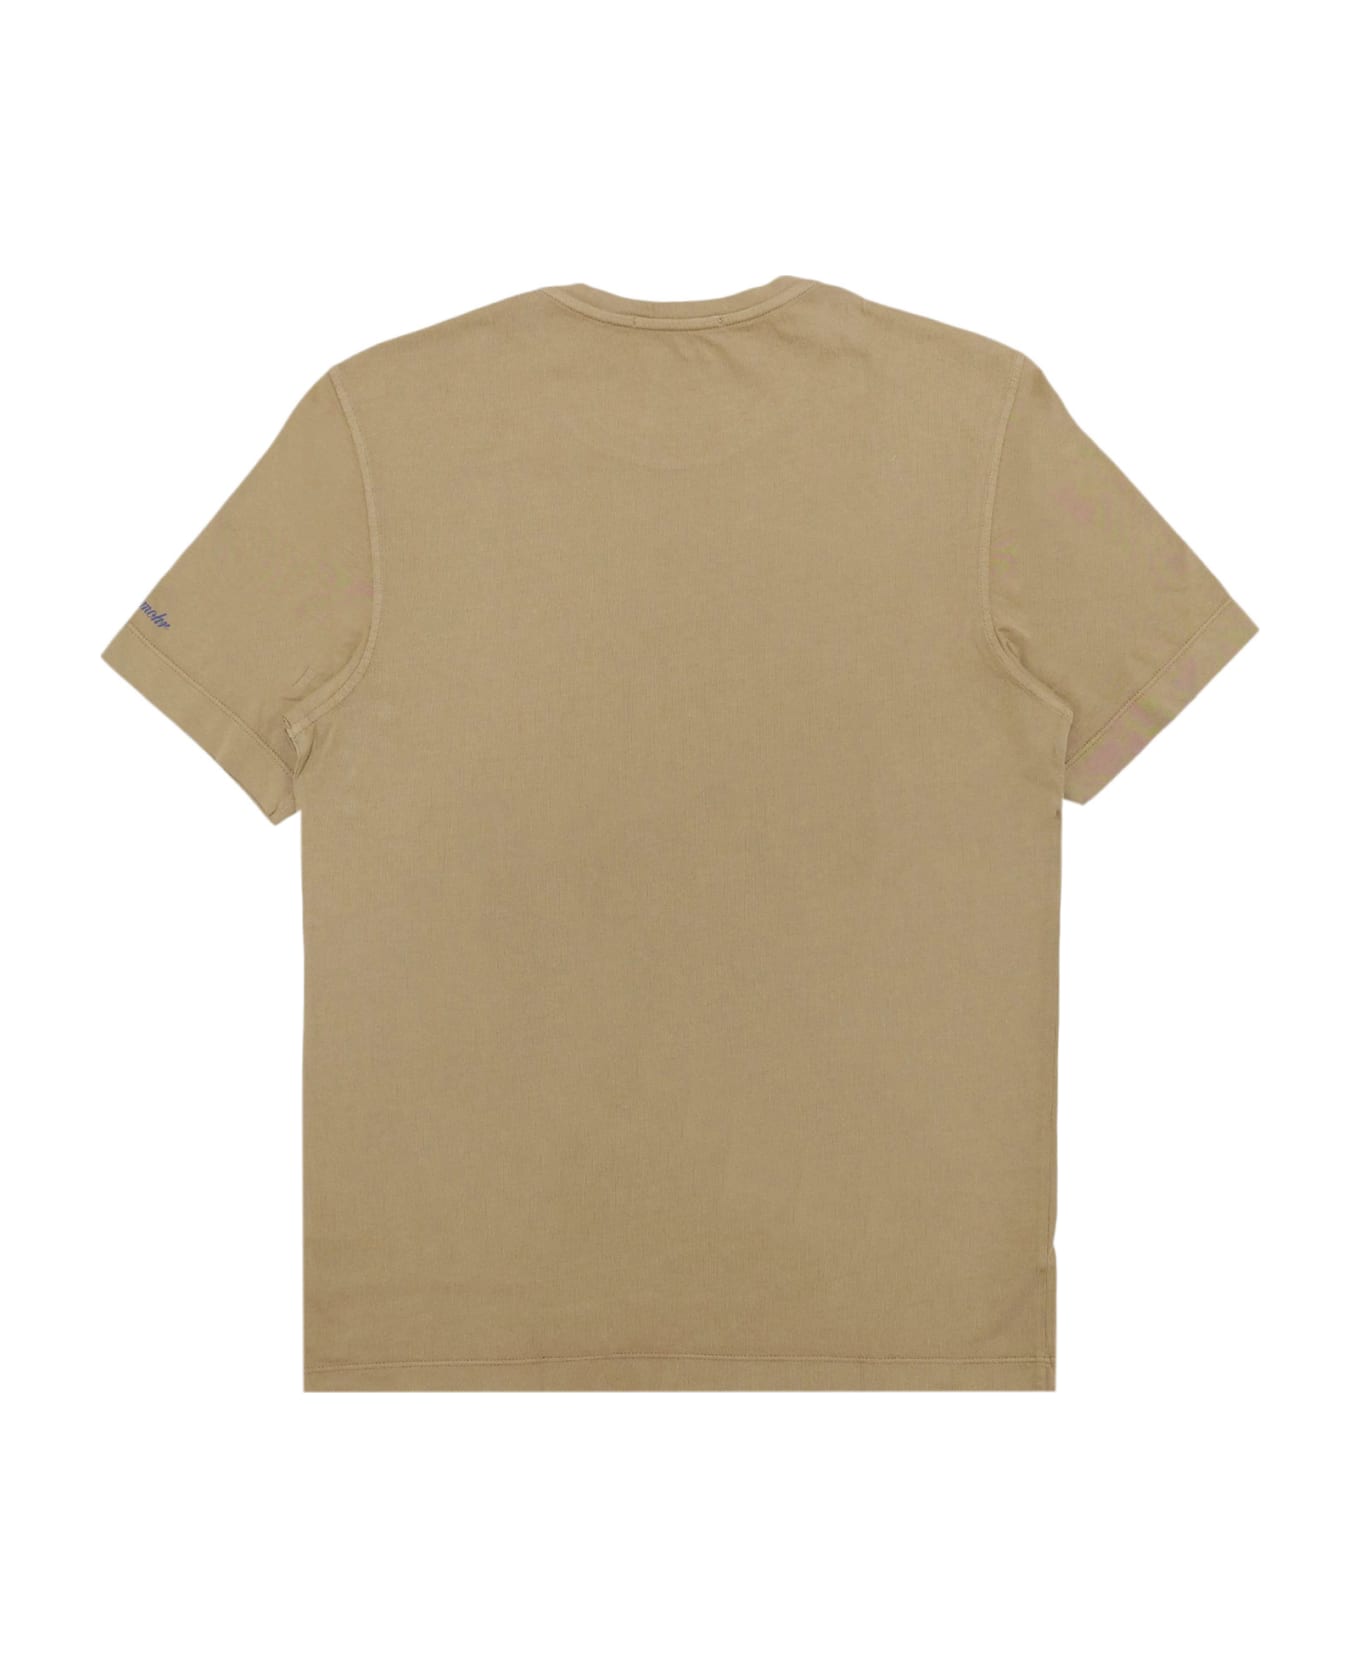 Drumohr T-shirt - Brown